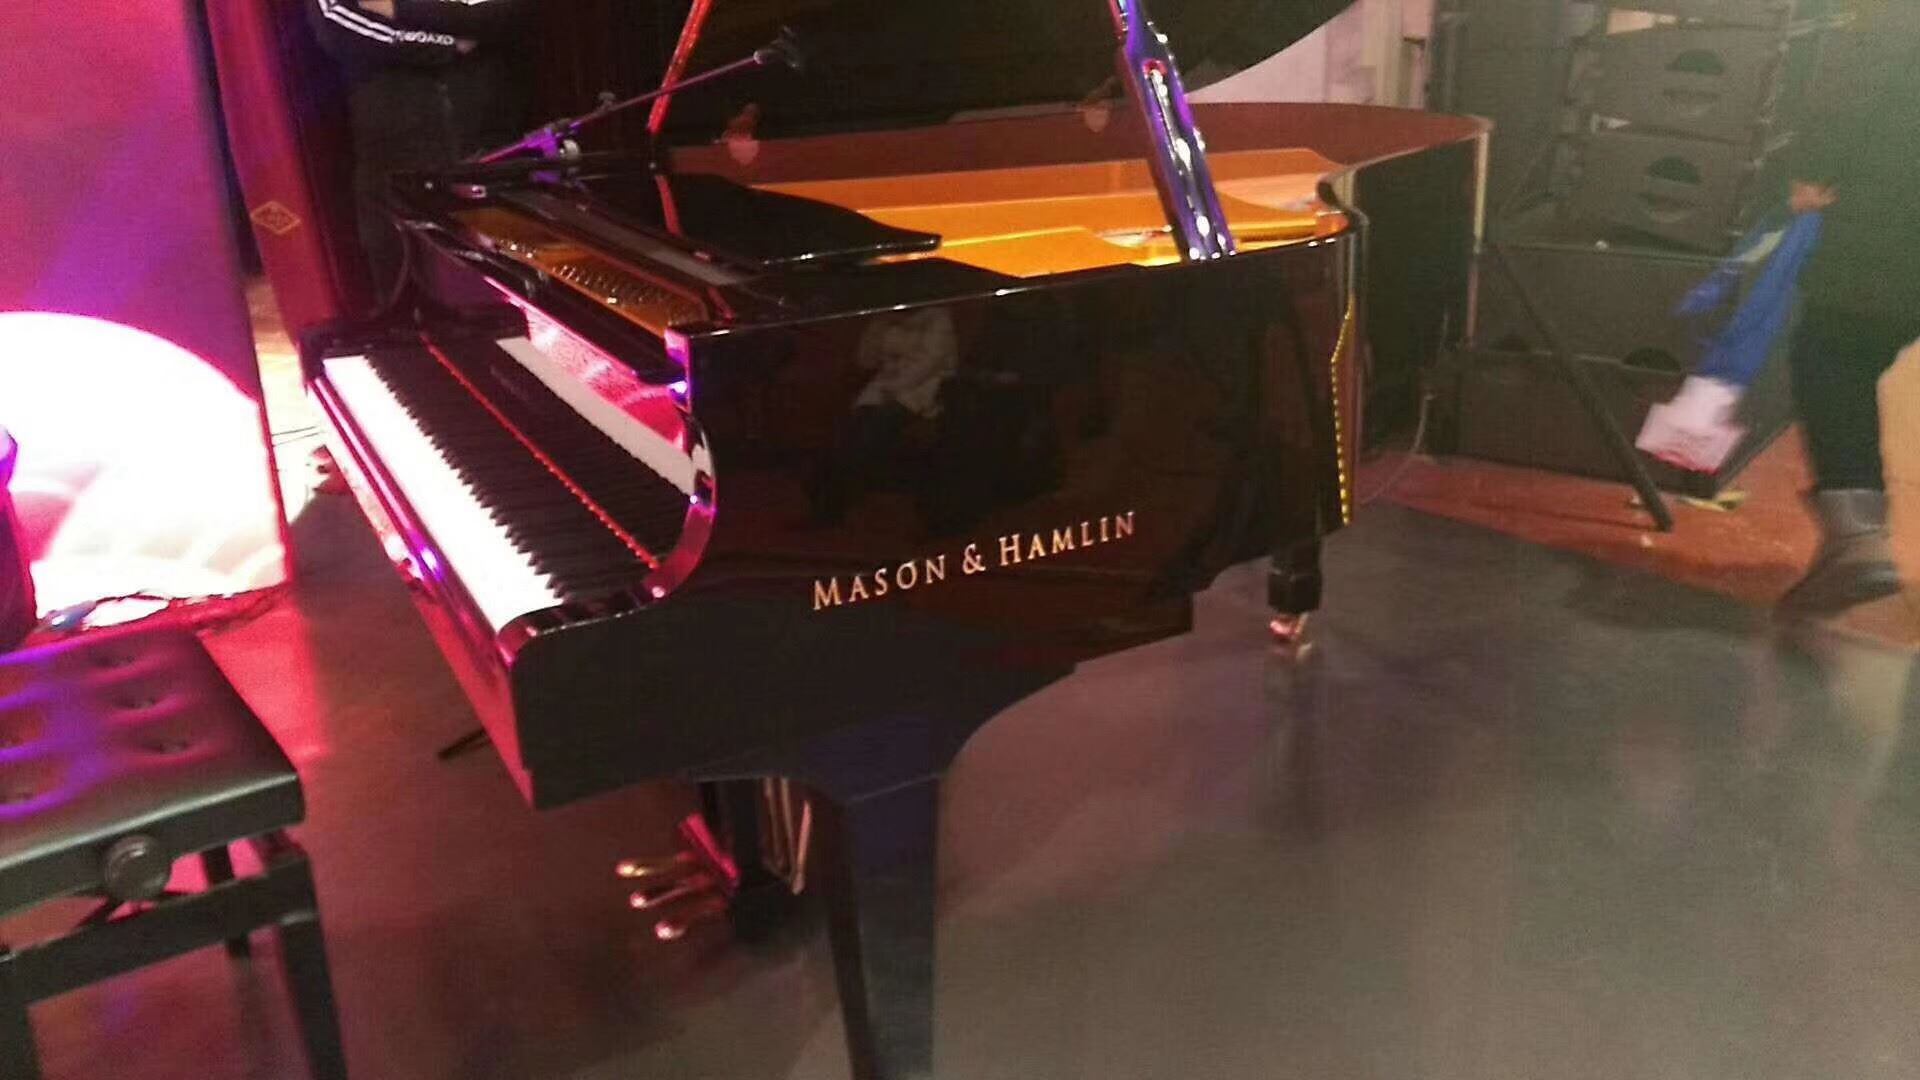 Mason & Hamlin钢琴登陆央视CCTV-12